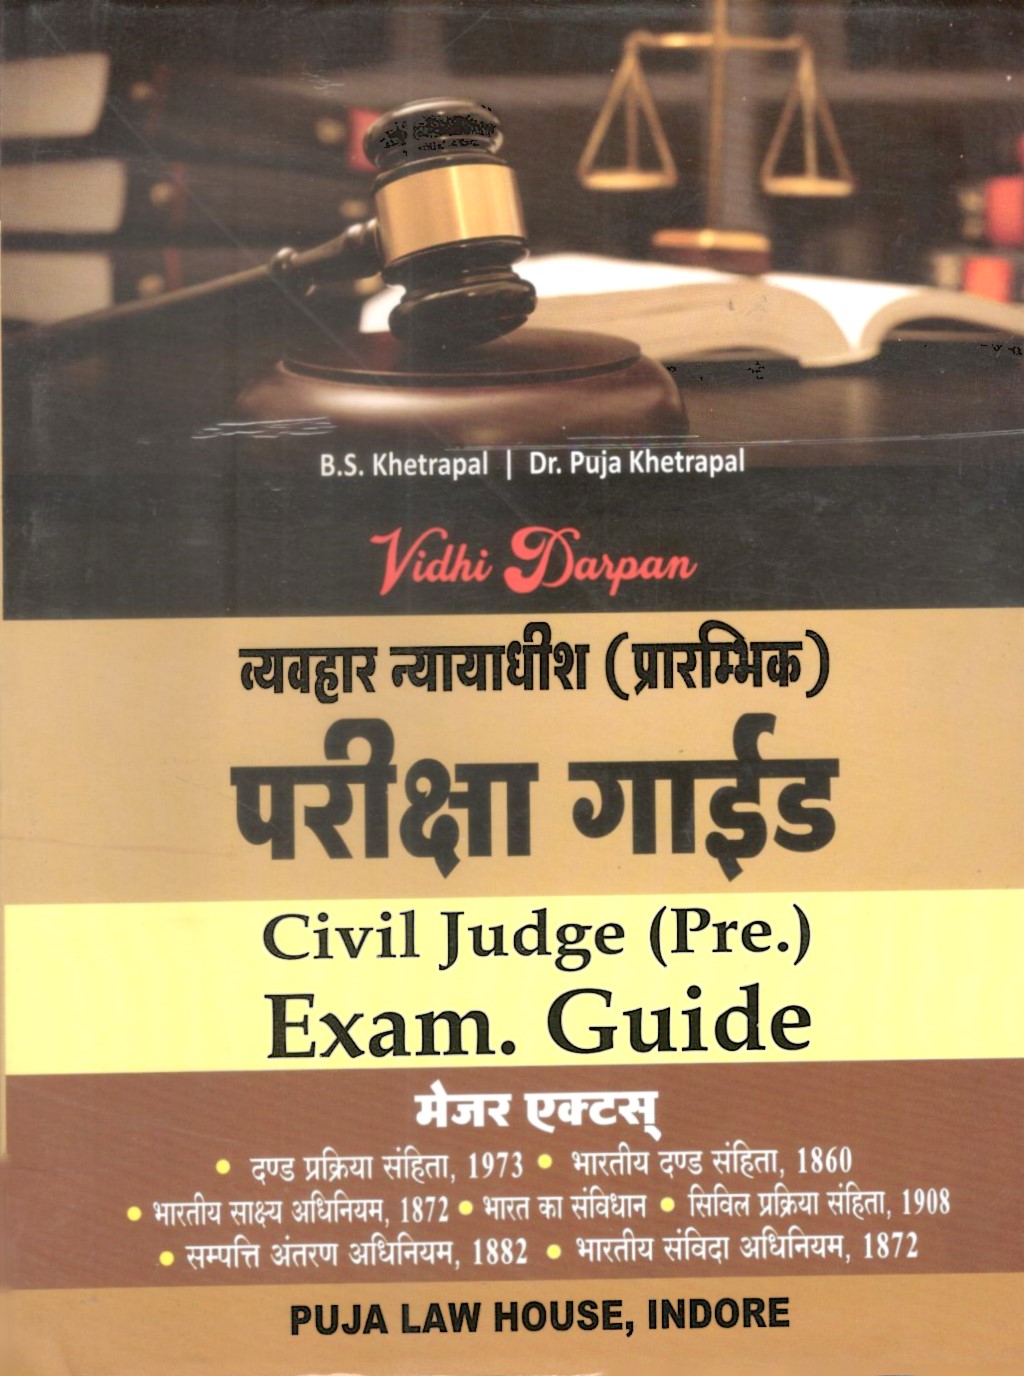 Vidhi Darpan - Civil Judge (Pre.) Exams Guide (Major Acts) / व्यवहार न्यायाधीश (प्रारंभिक) परीक्षा गाइड (मेजर एक्ट्स)  Hindi Edition